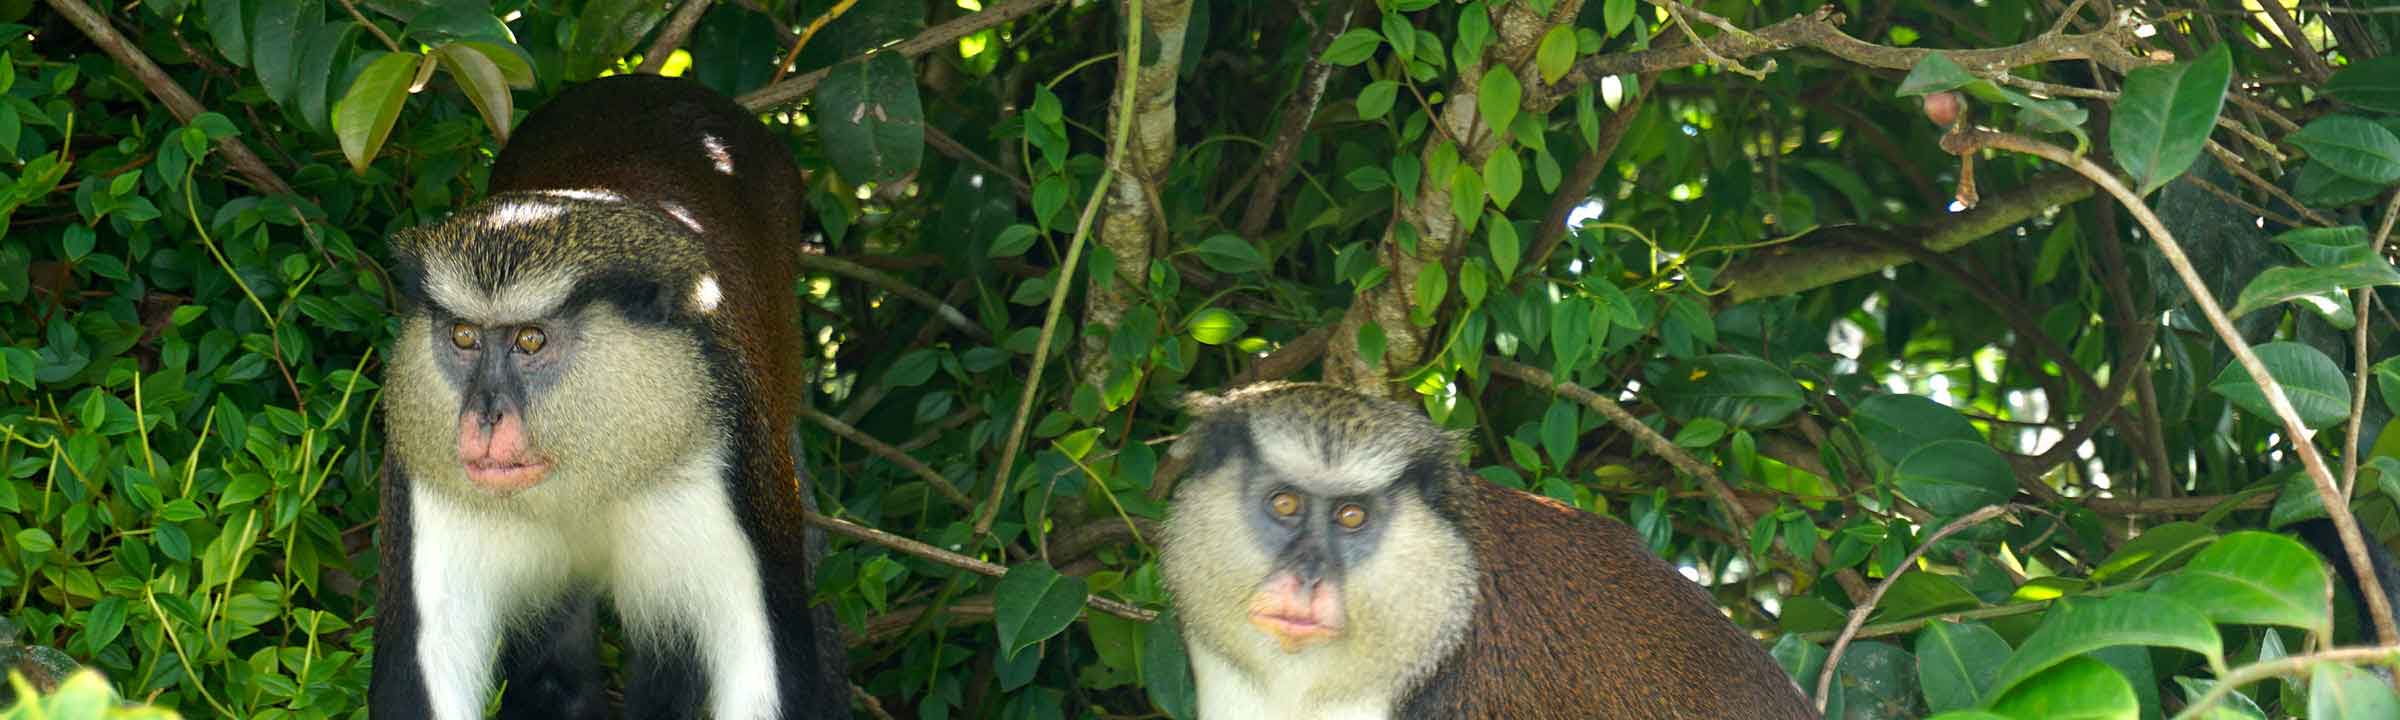 Grenada Featured Image - Mona Monkeys